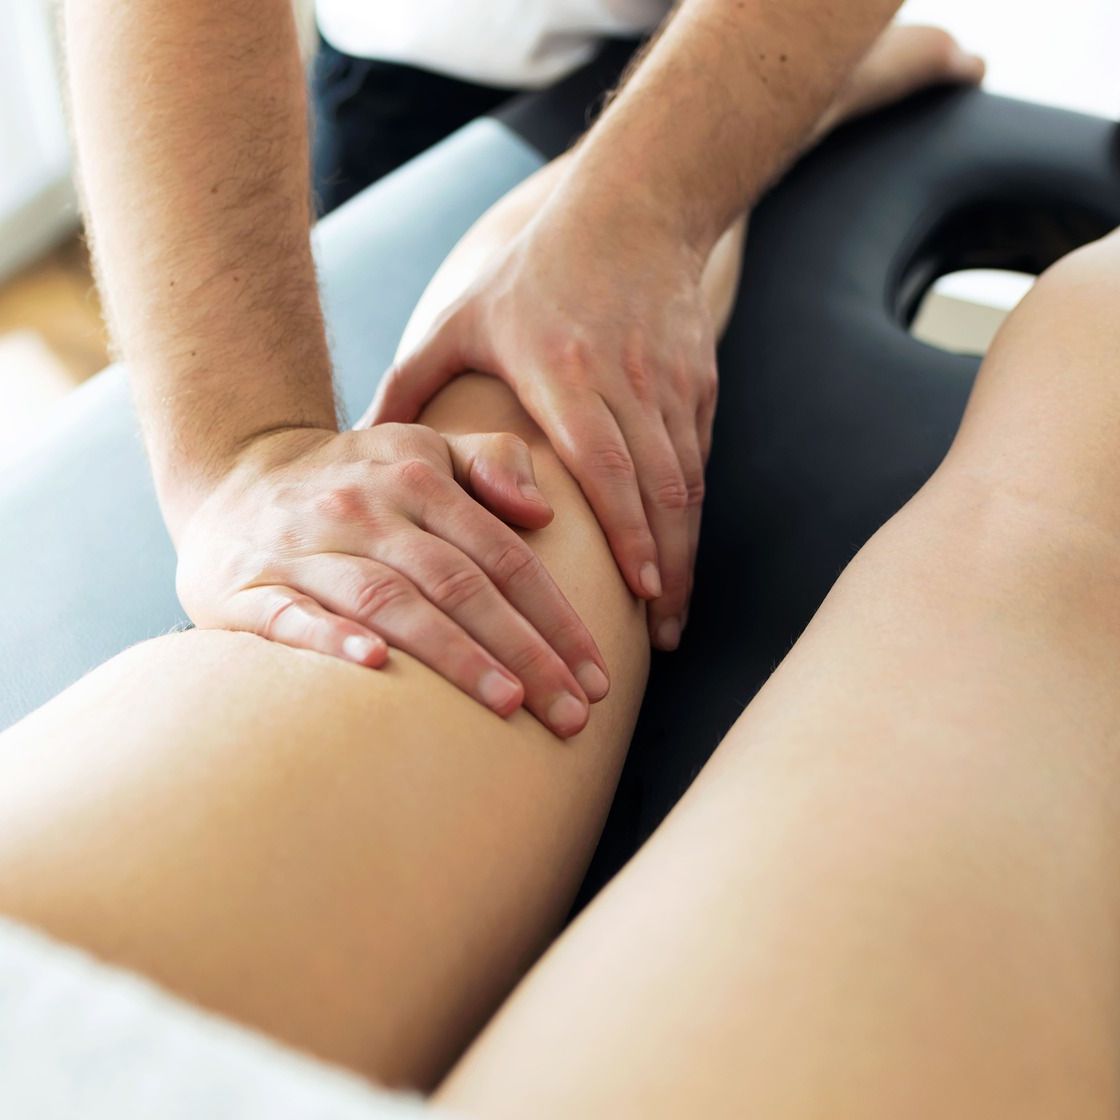 fisioterapeuta dando masaje en piernas